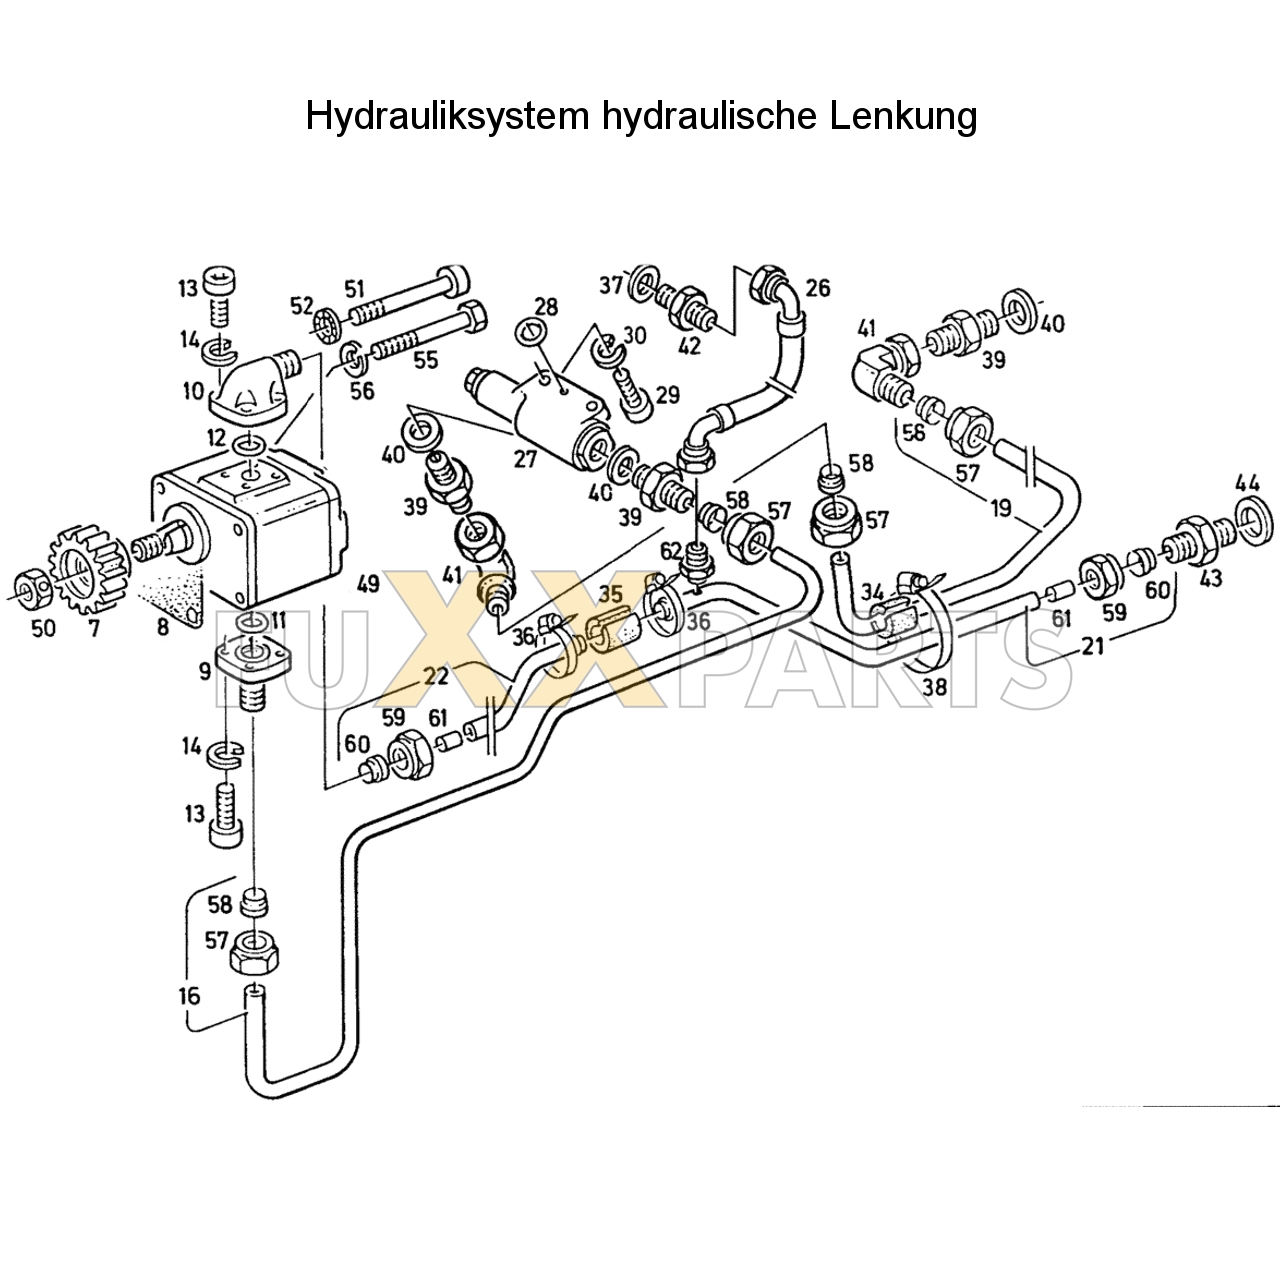 D 4807 Hydrauliksystem hyd. Lenkung